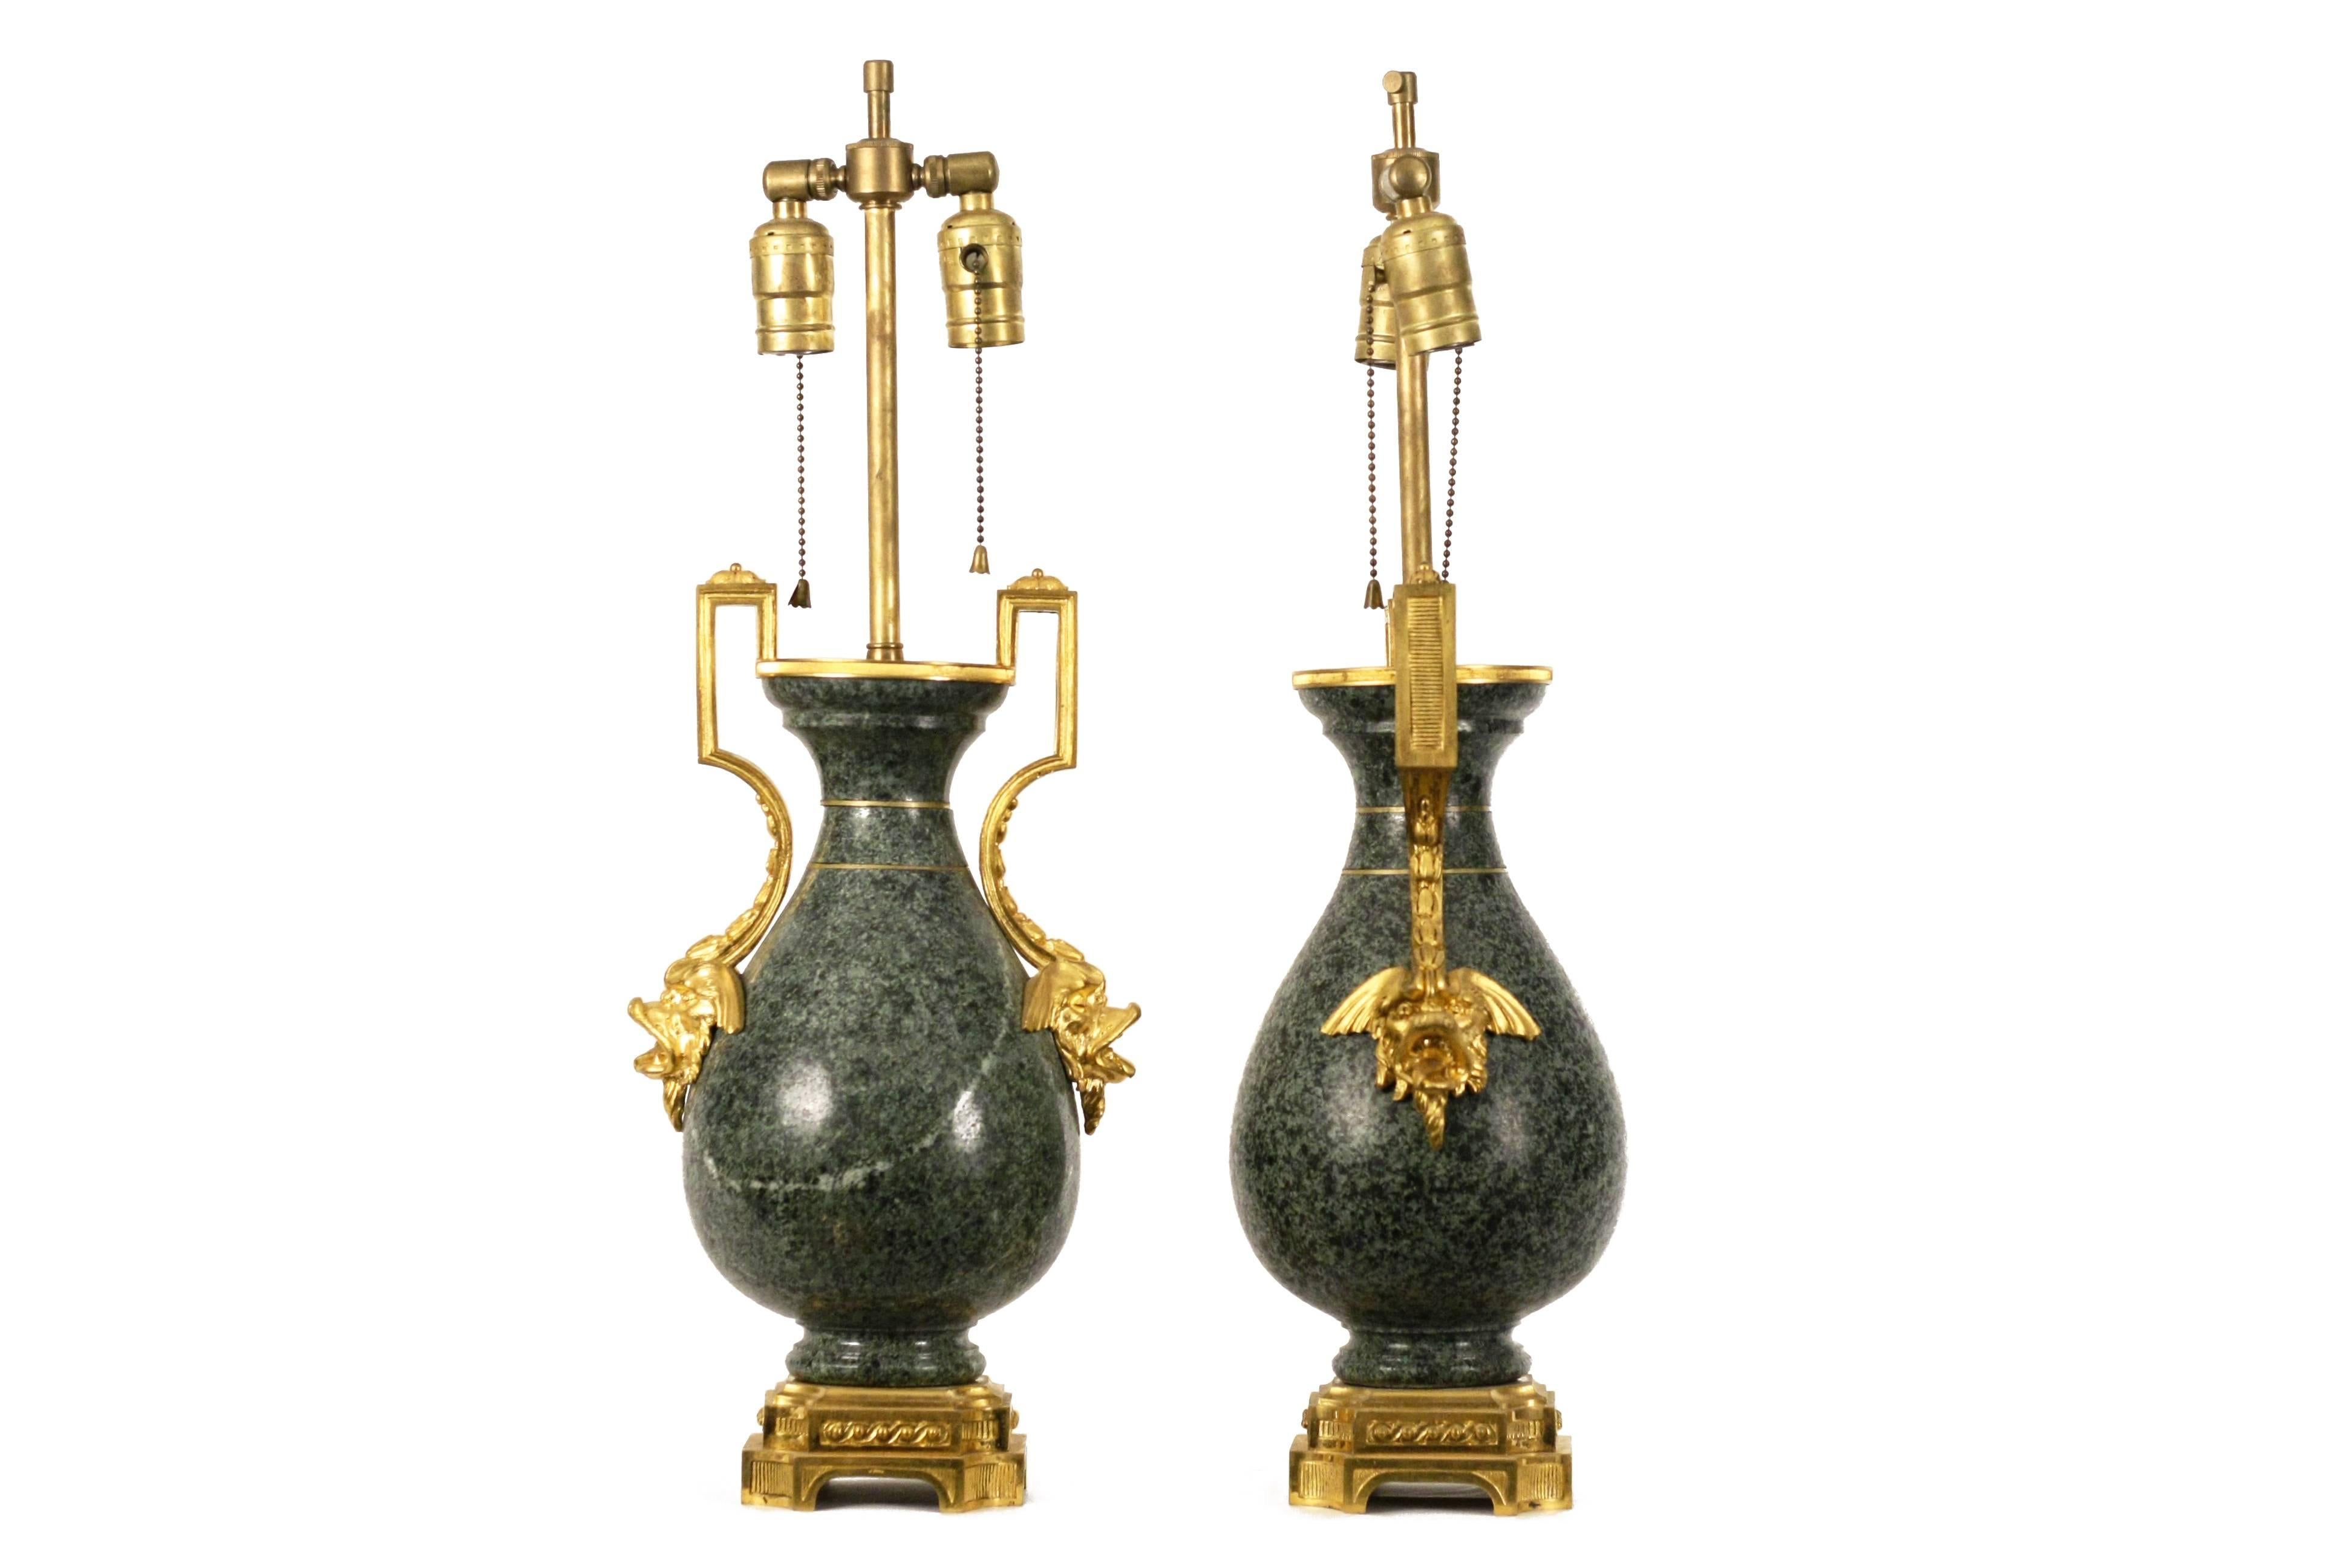 Paire de vases français avec monture en bronze doré sur granit, maintenant montés comme lampes.